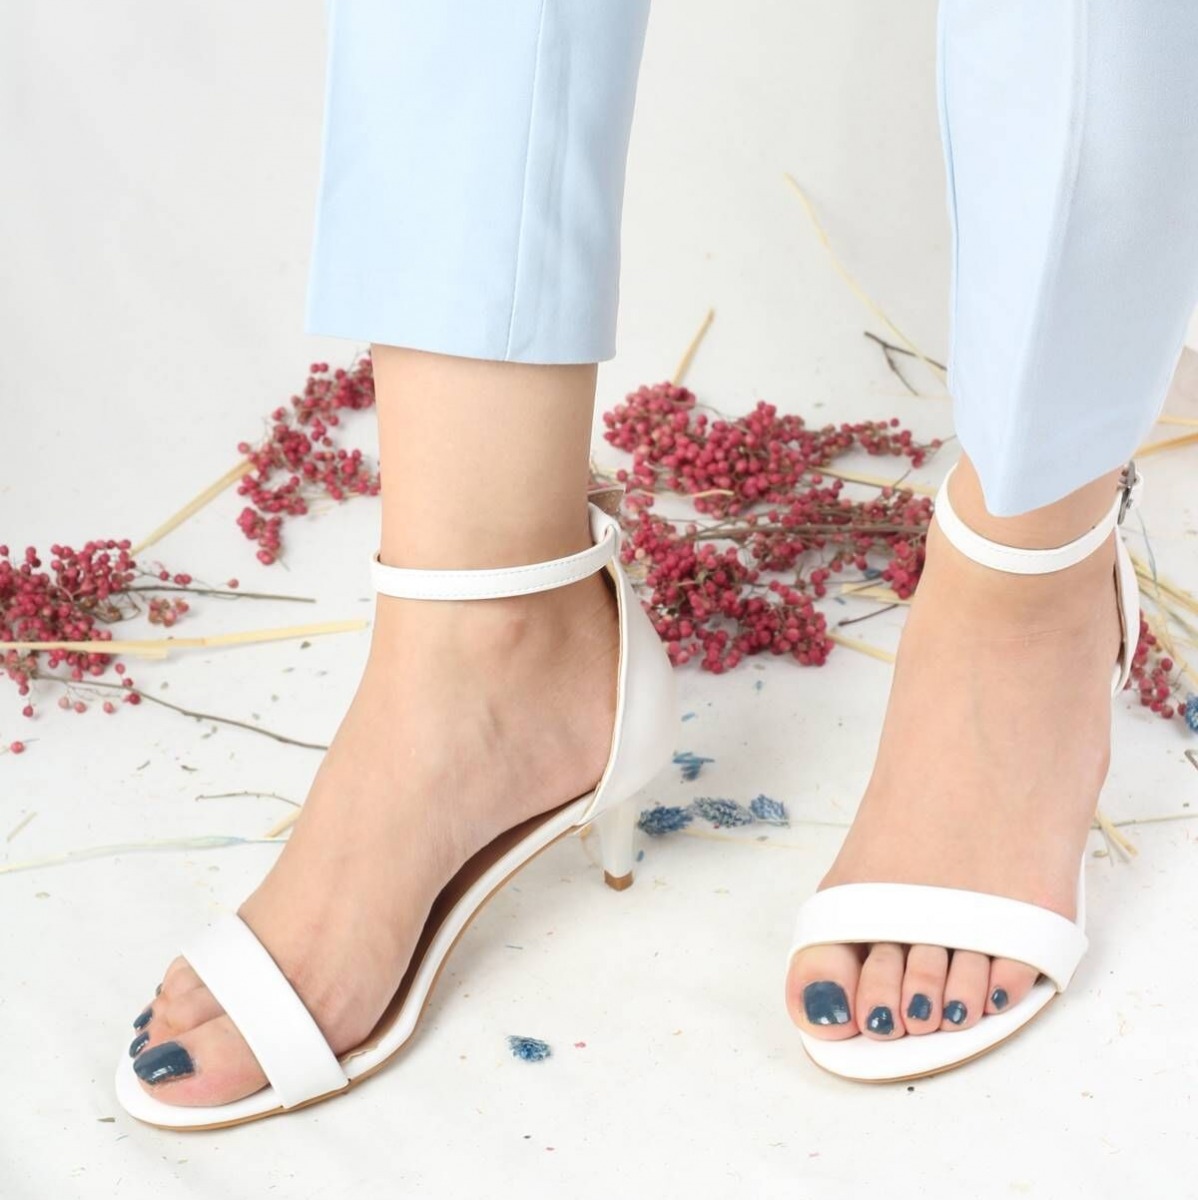 Flo Beyaz Mat Kısa Topuklu Tek Bant Kadın Ayakkabı - Aysa. 2